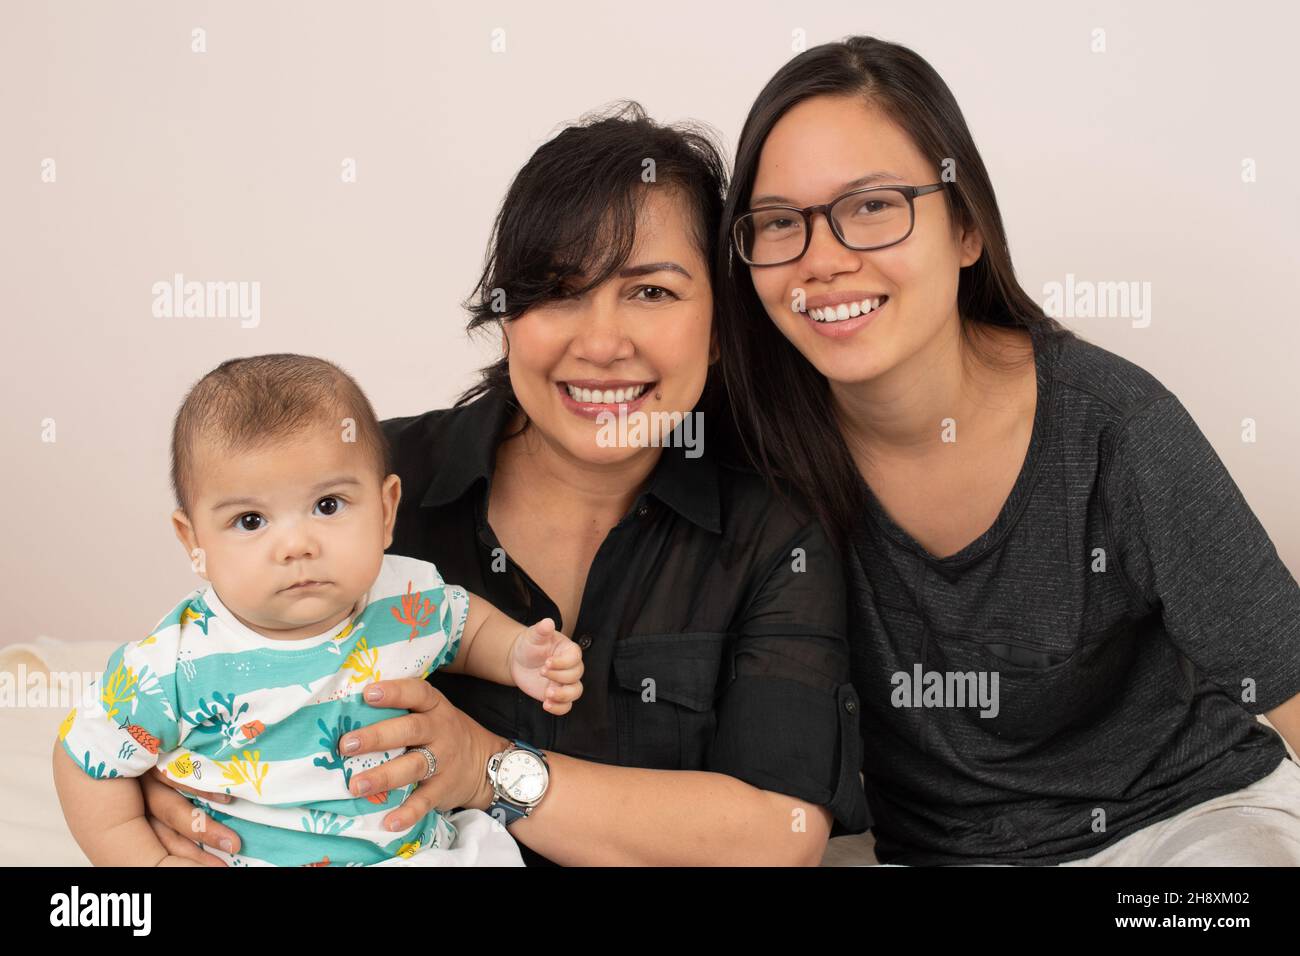 bambino di 3 mesi con sorella maggiore, di 20 anni e madre, ritratto, guardando la macchina fotografica Foto Stock